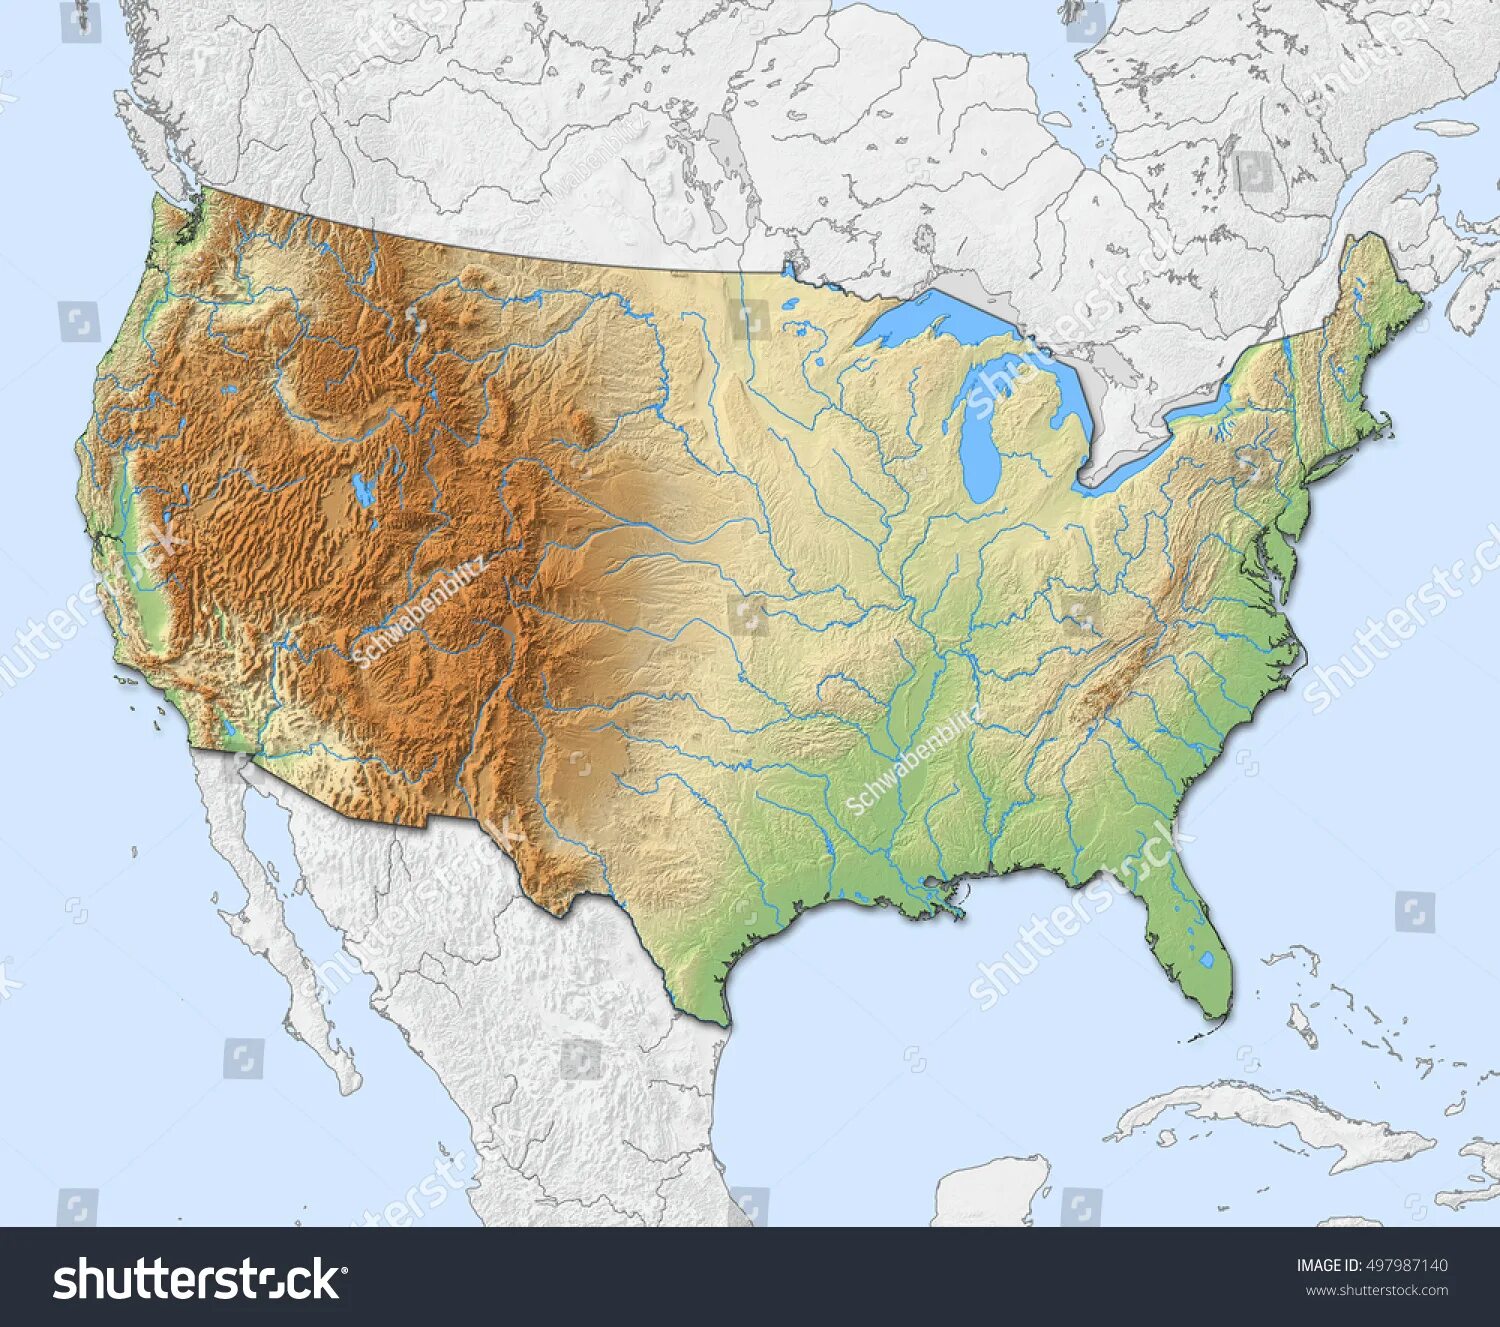 Карта рельефа США. Лаврентийская возвышенность Северная Америка. Рельеф и климат США. Рельеф в USA. Особенности рельефа сша общий характер поверхности основные